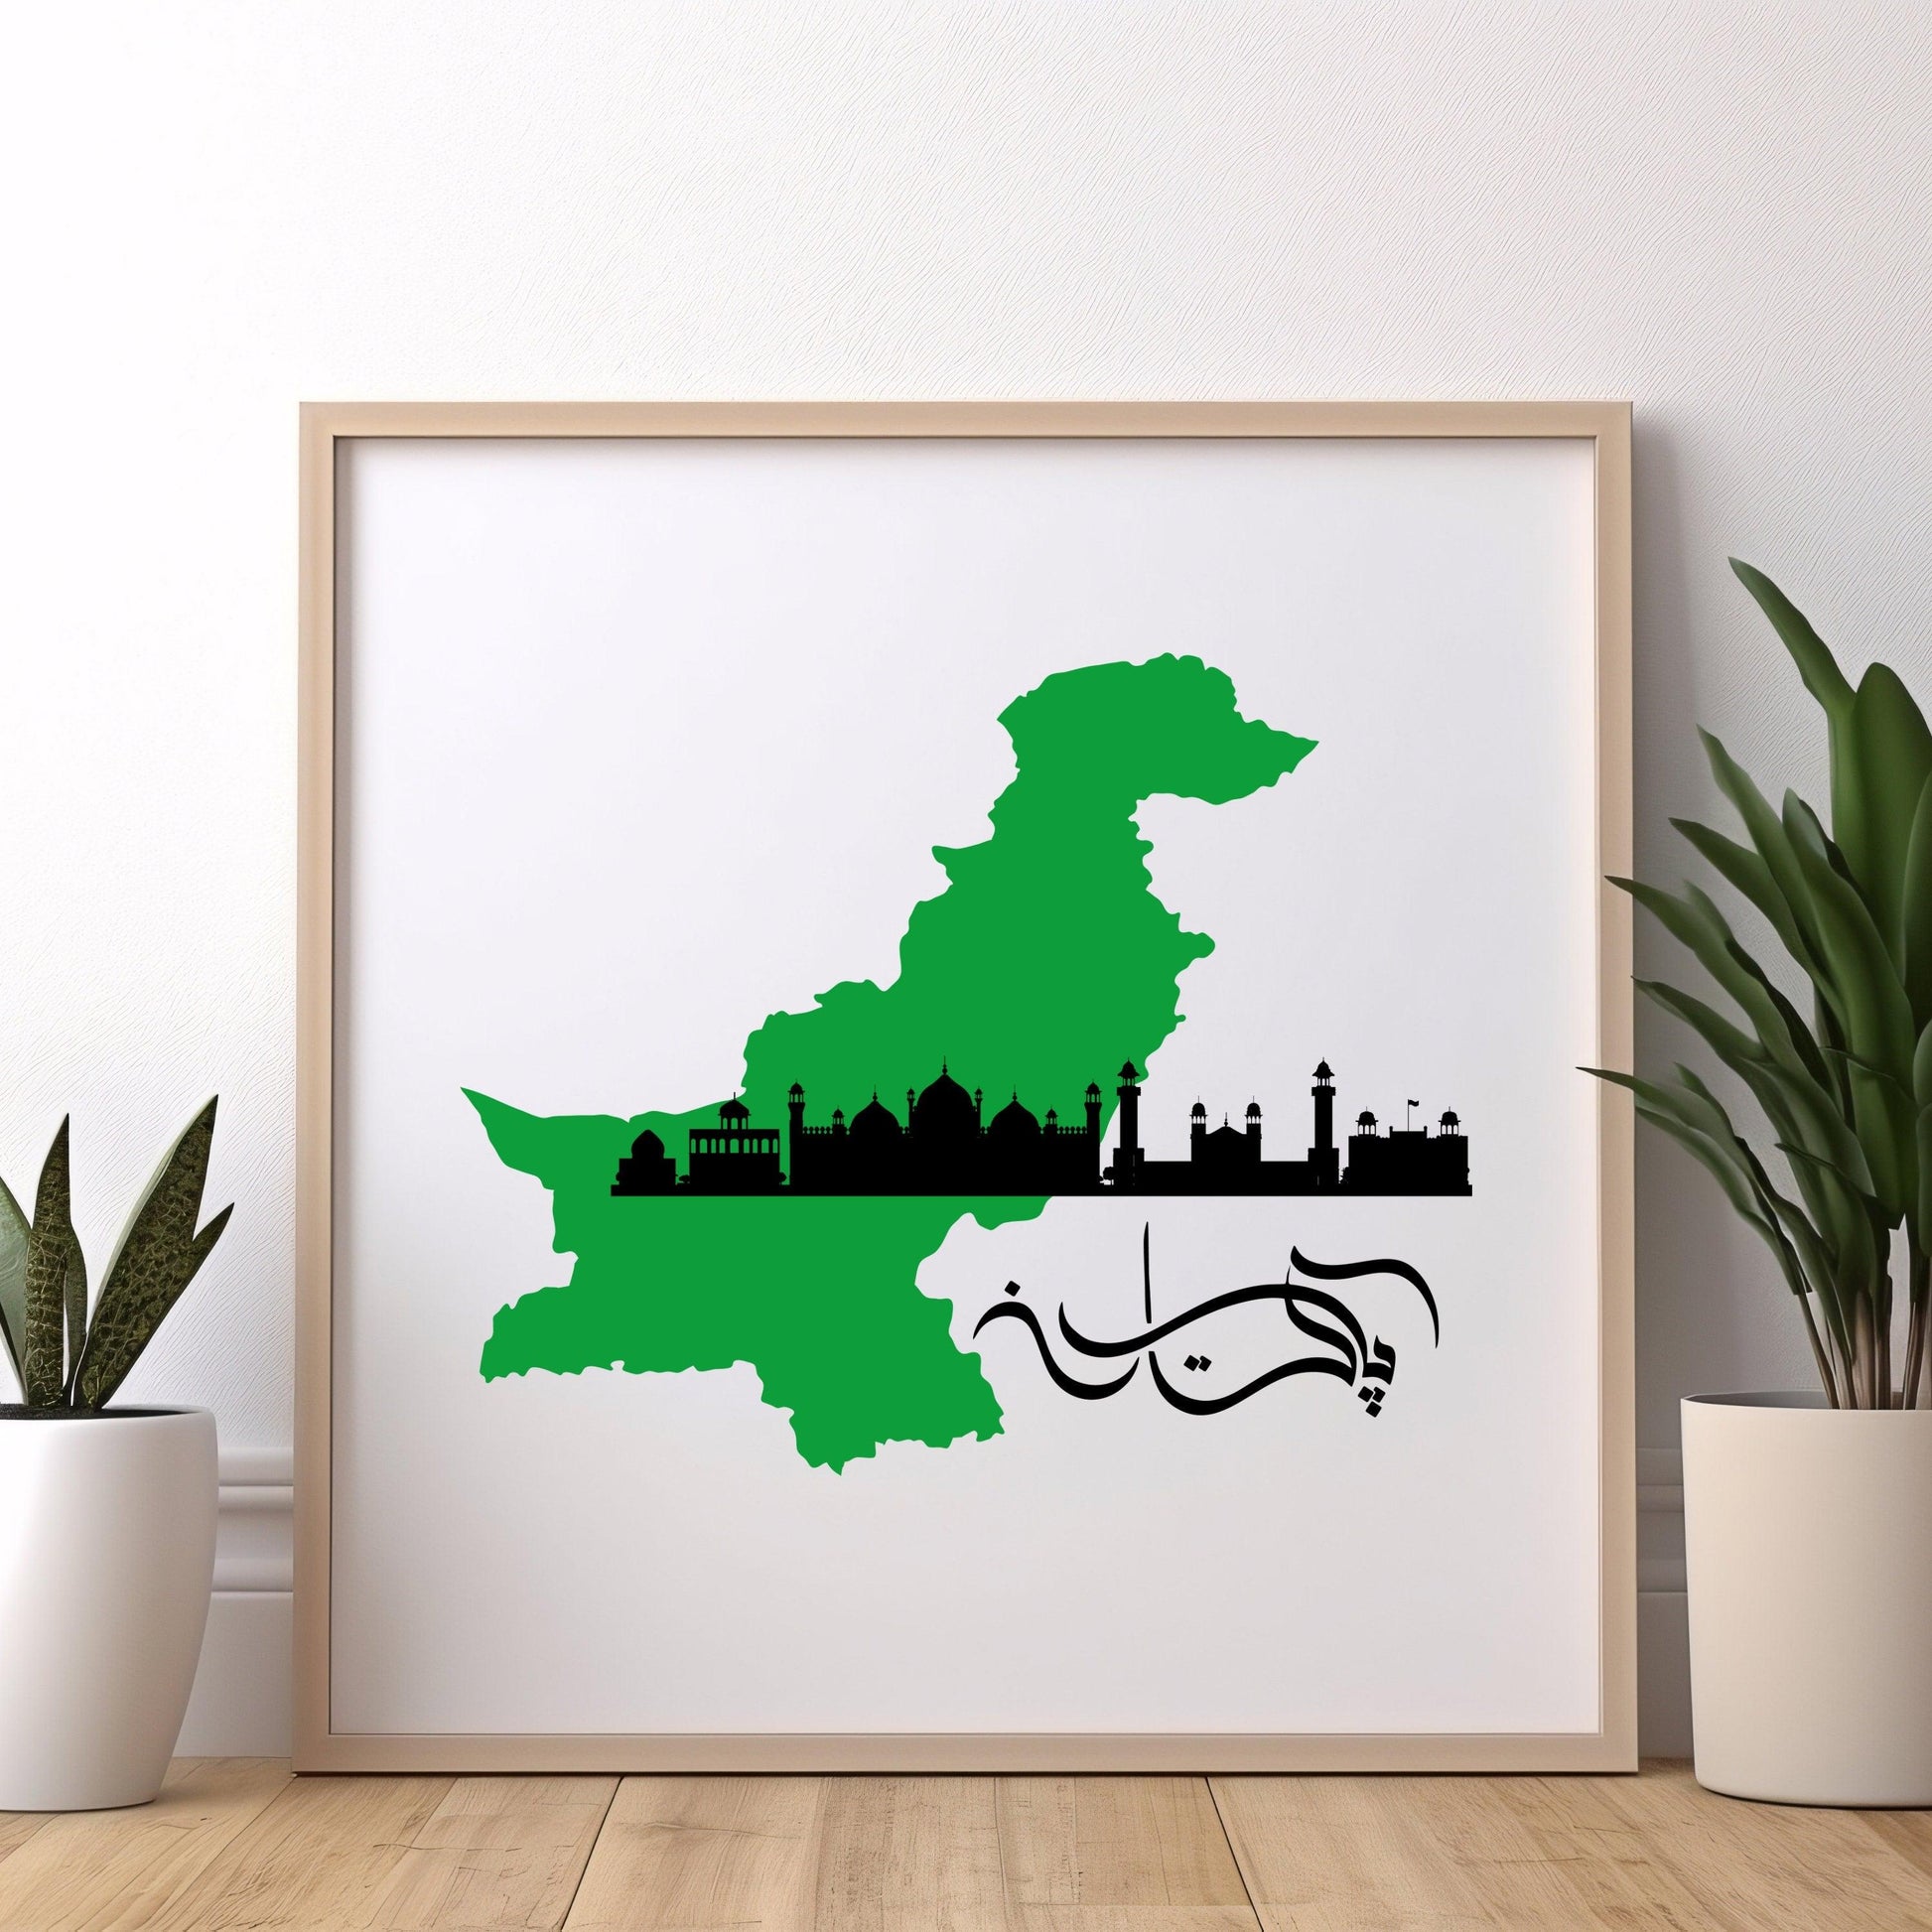 Pakistan Map Wall Art - Artkins Lifestyle